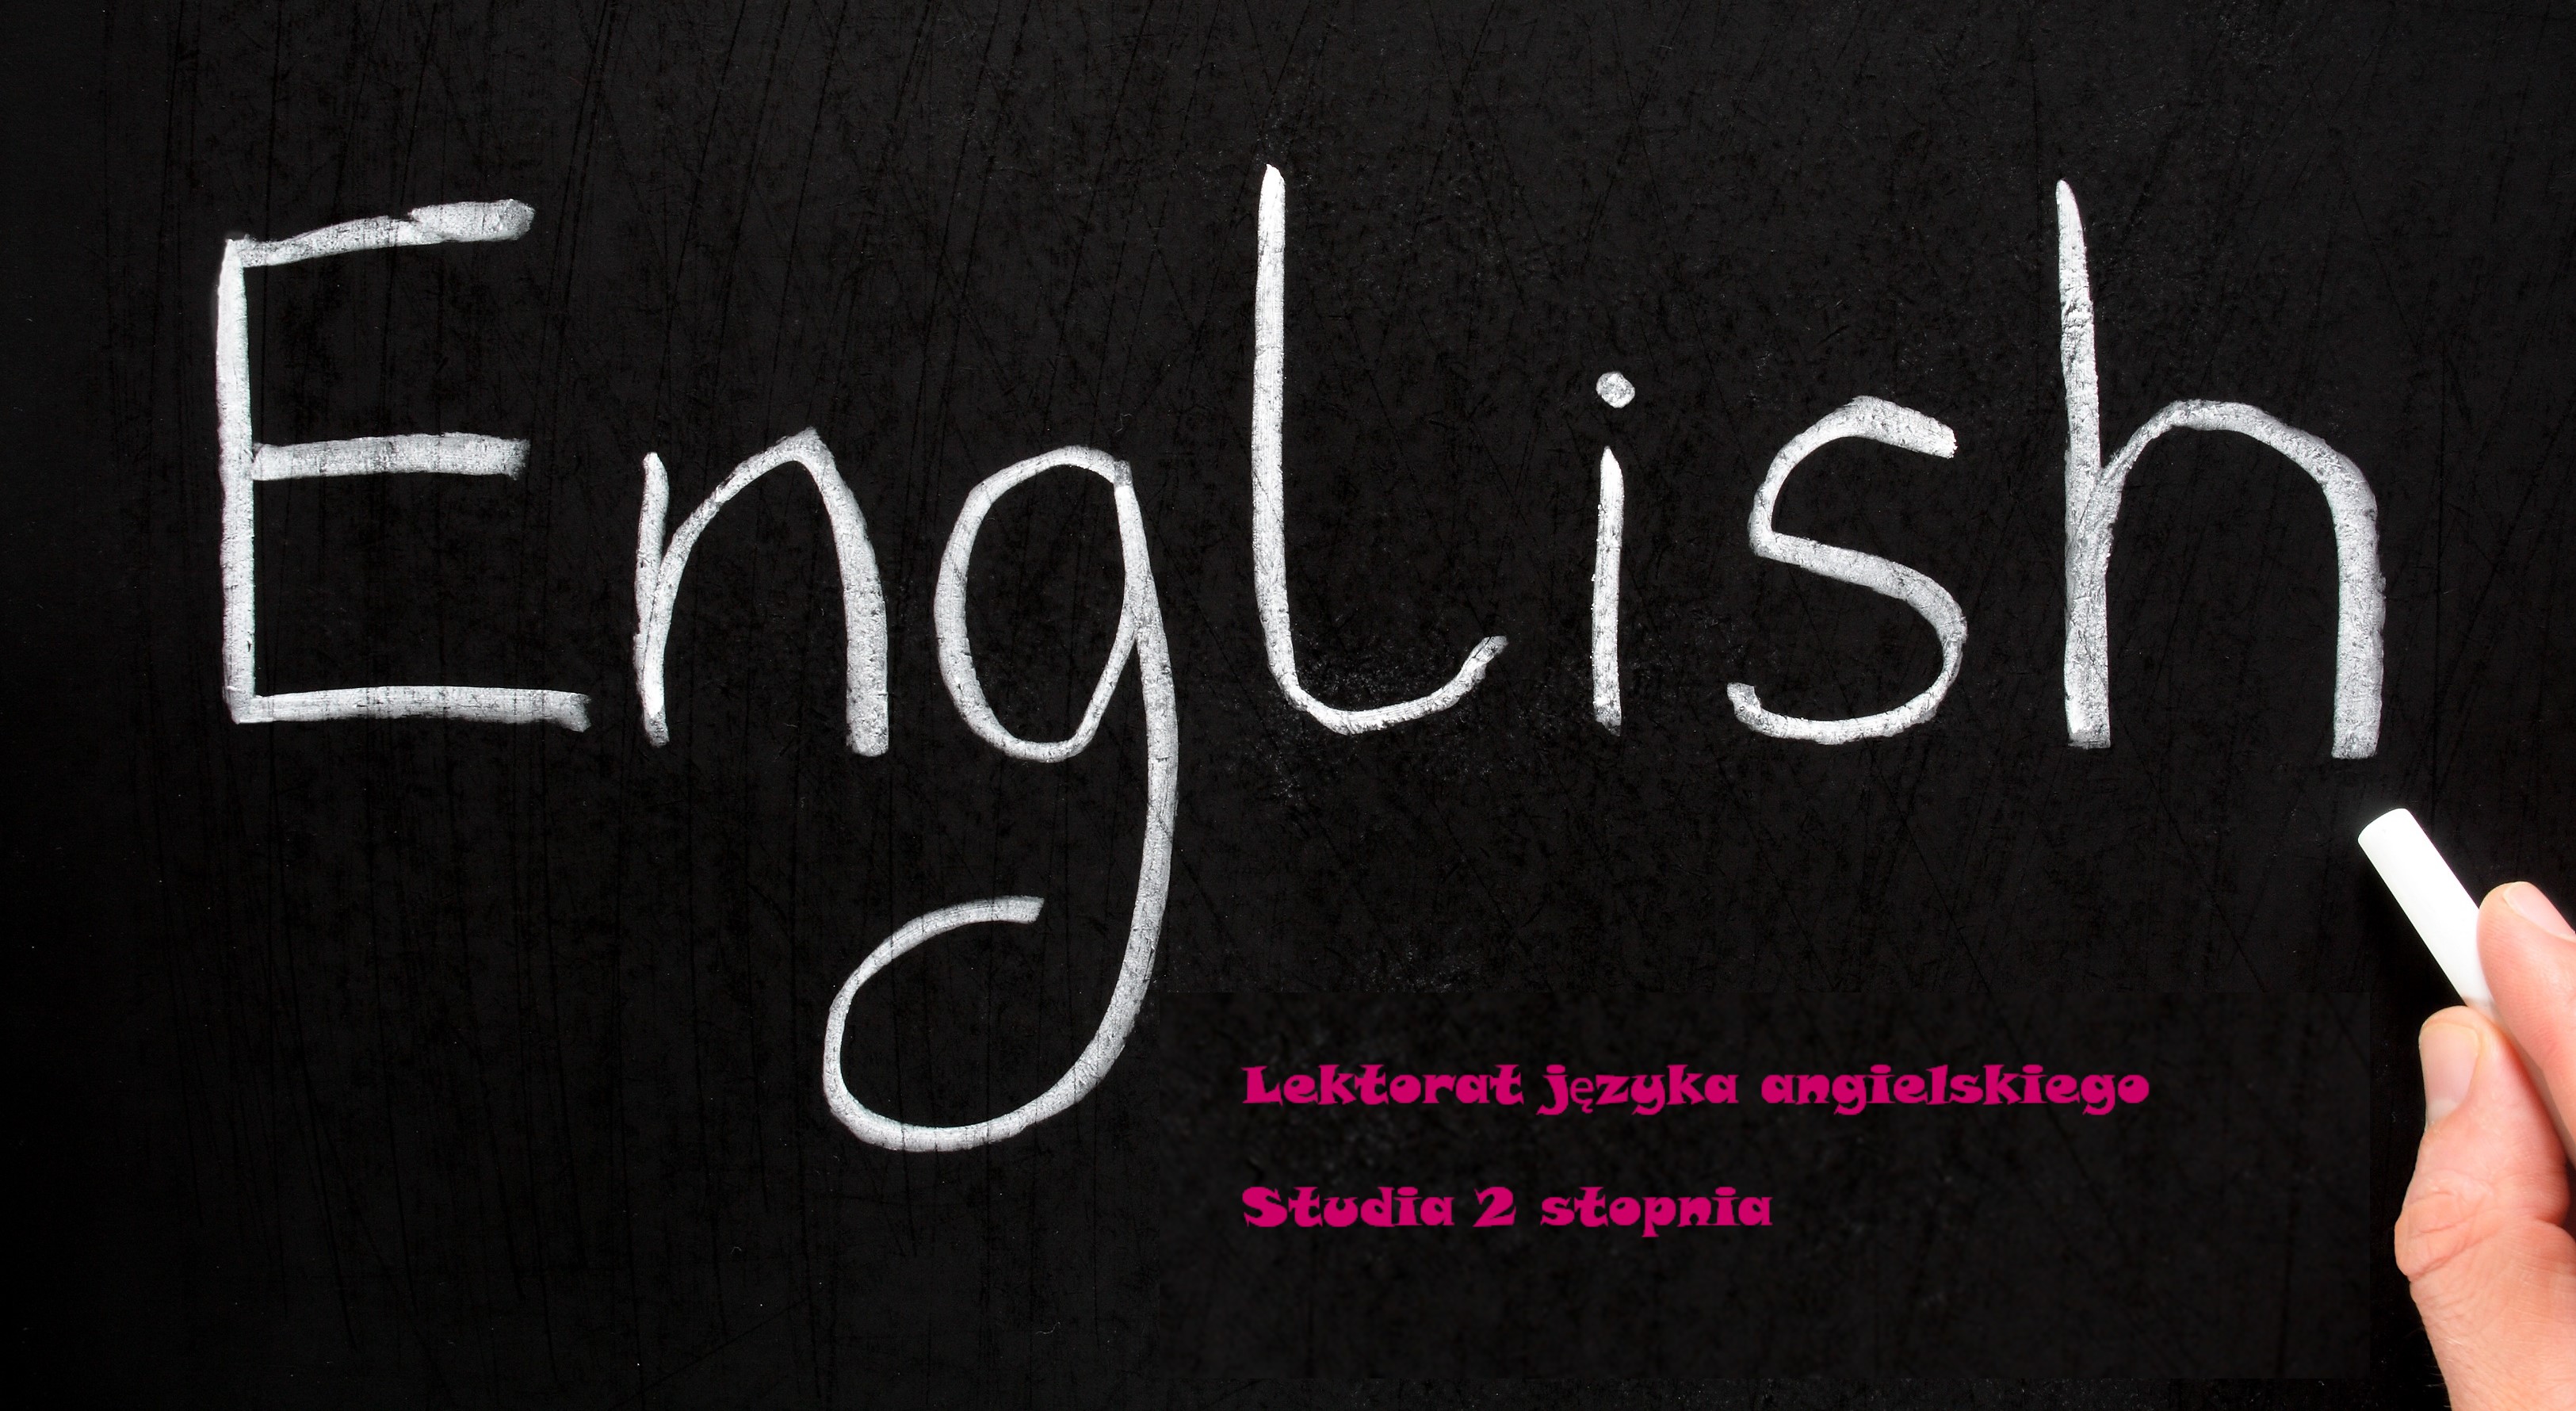 Course Image Język angielski/B2 (Nabielska-Staszewska/2stS)